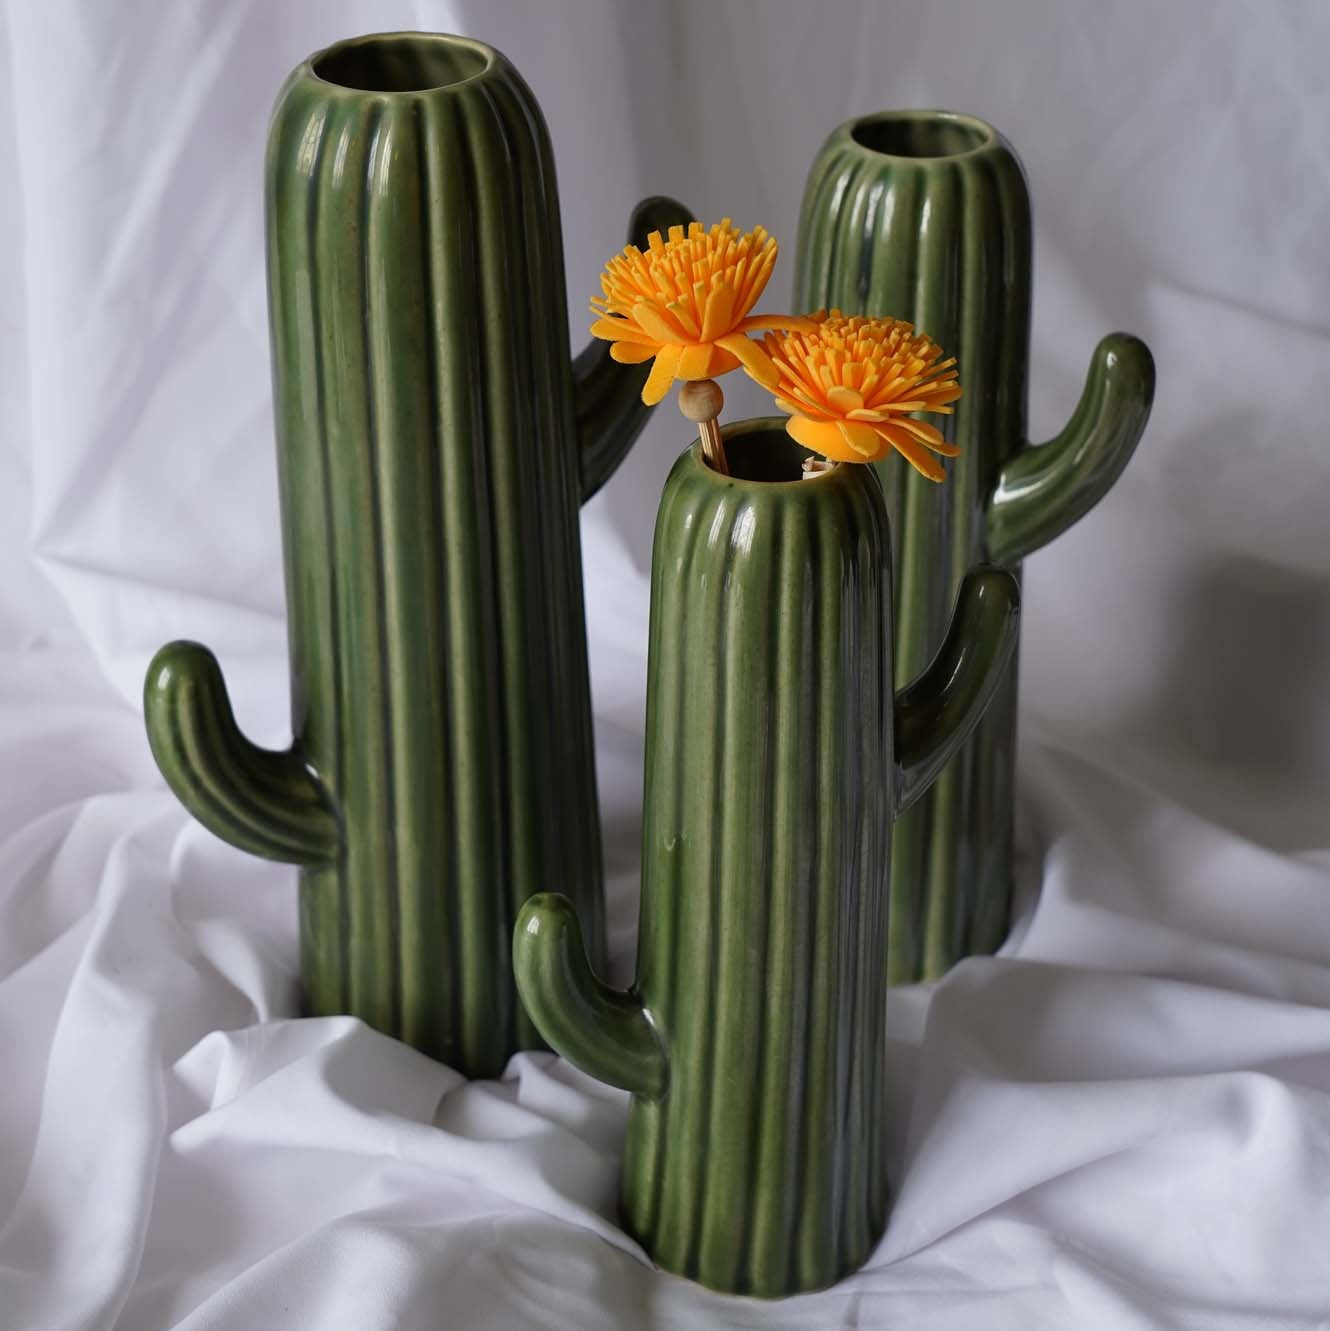 Medium Cactus Vase